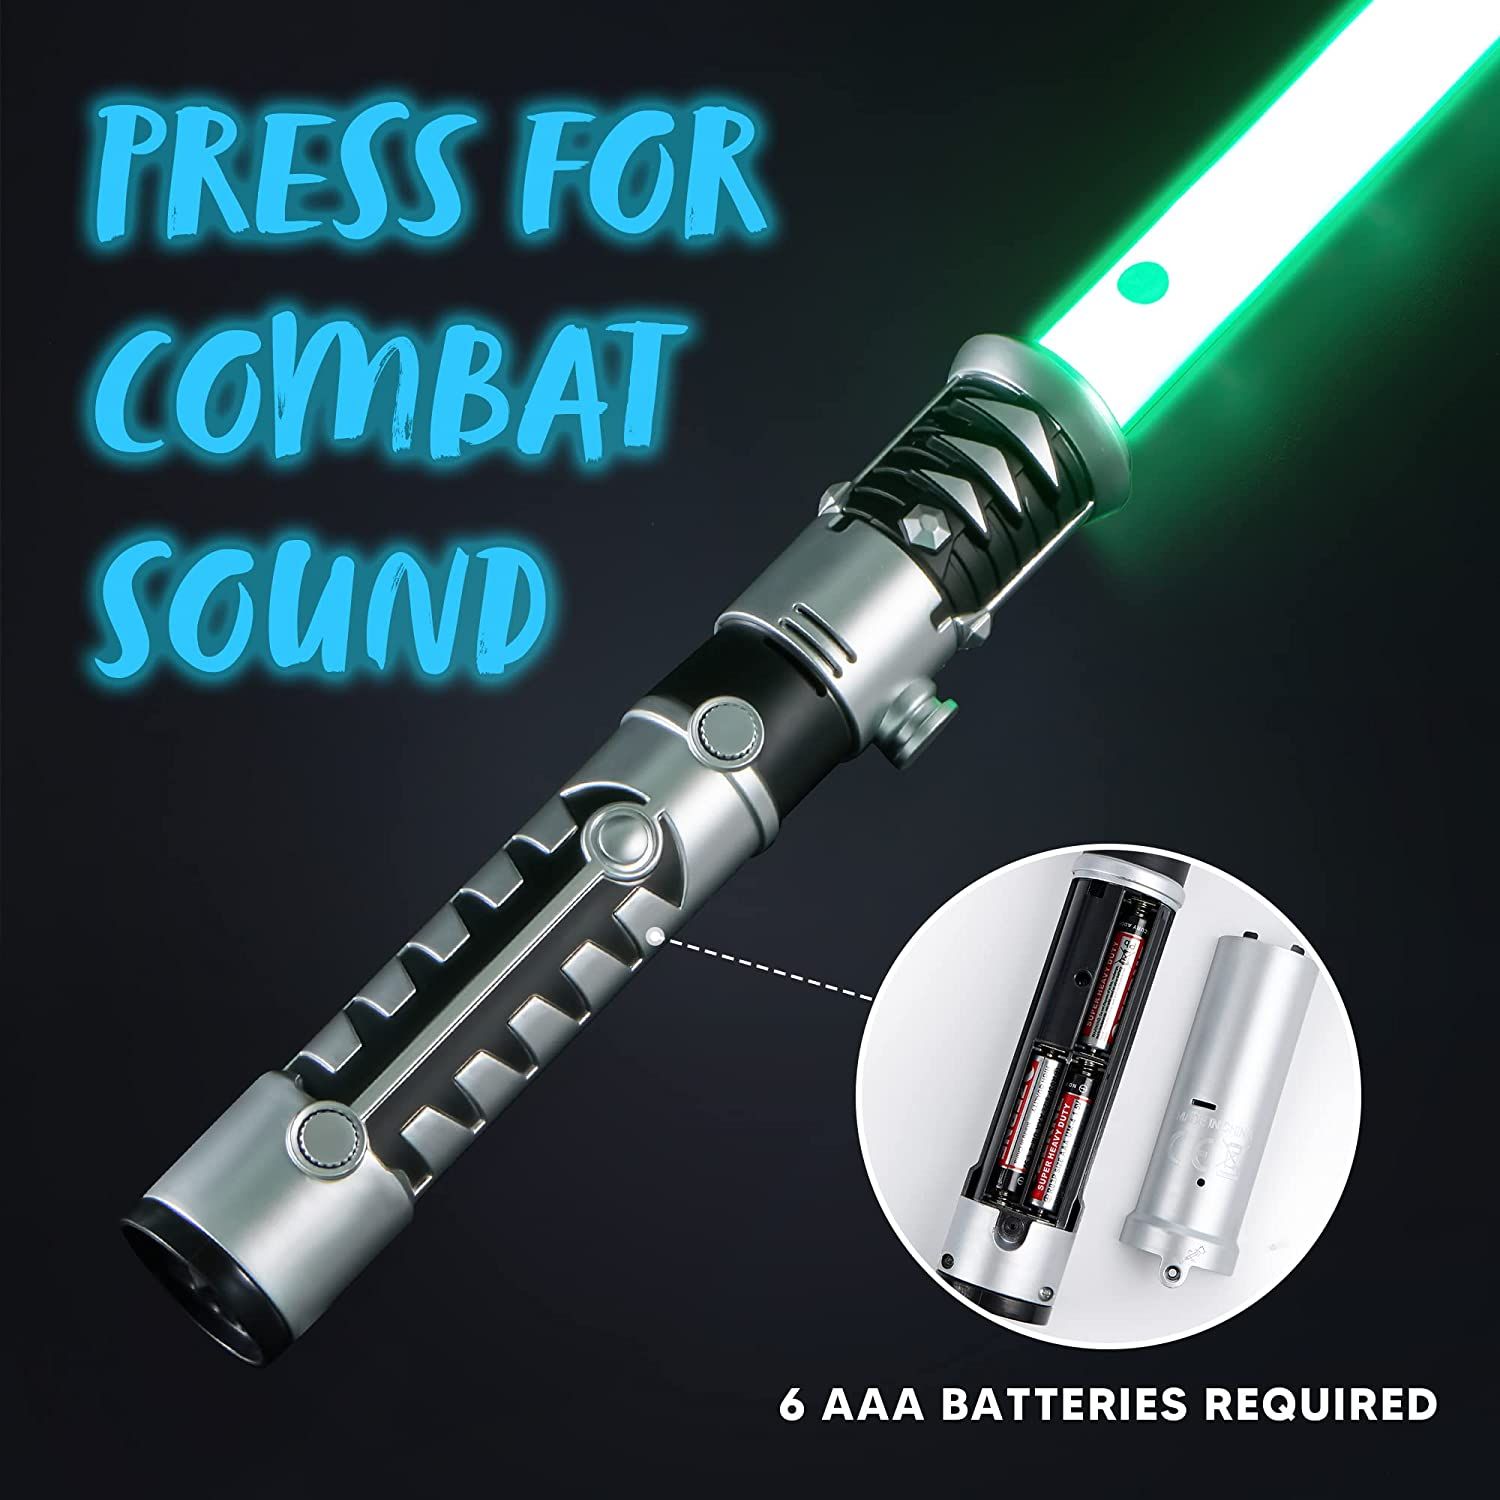 Joyin Light Up Saber 2-in-1 LED FX Dual Light Swords Set with Sound Sound